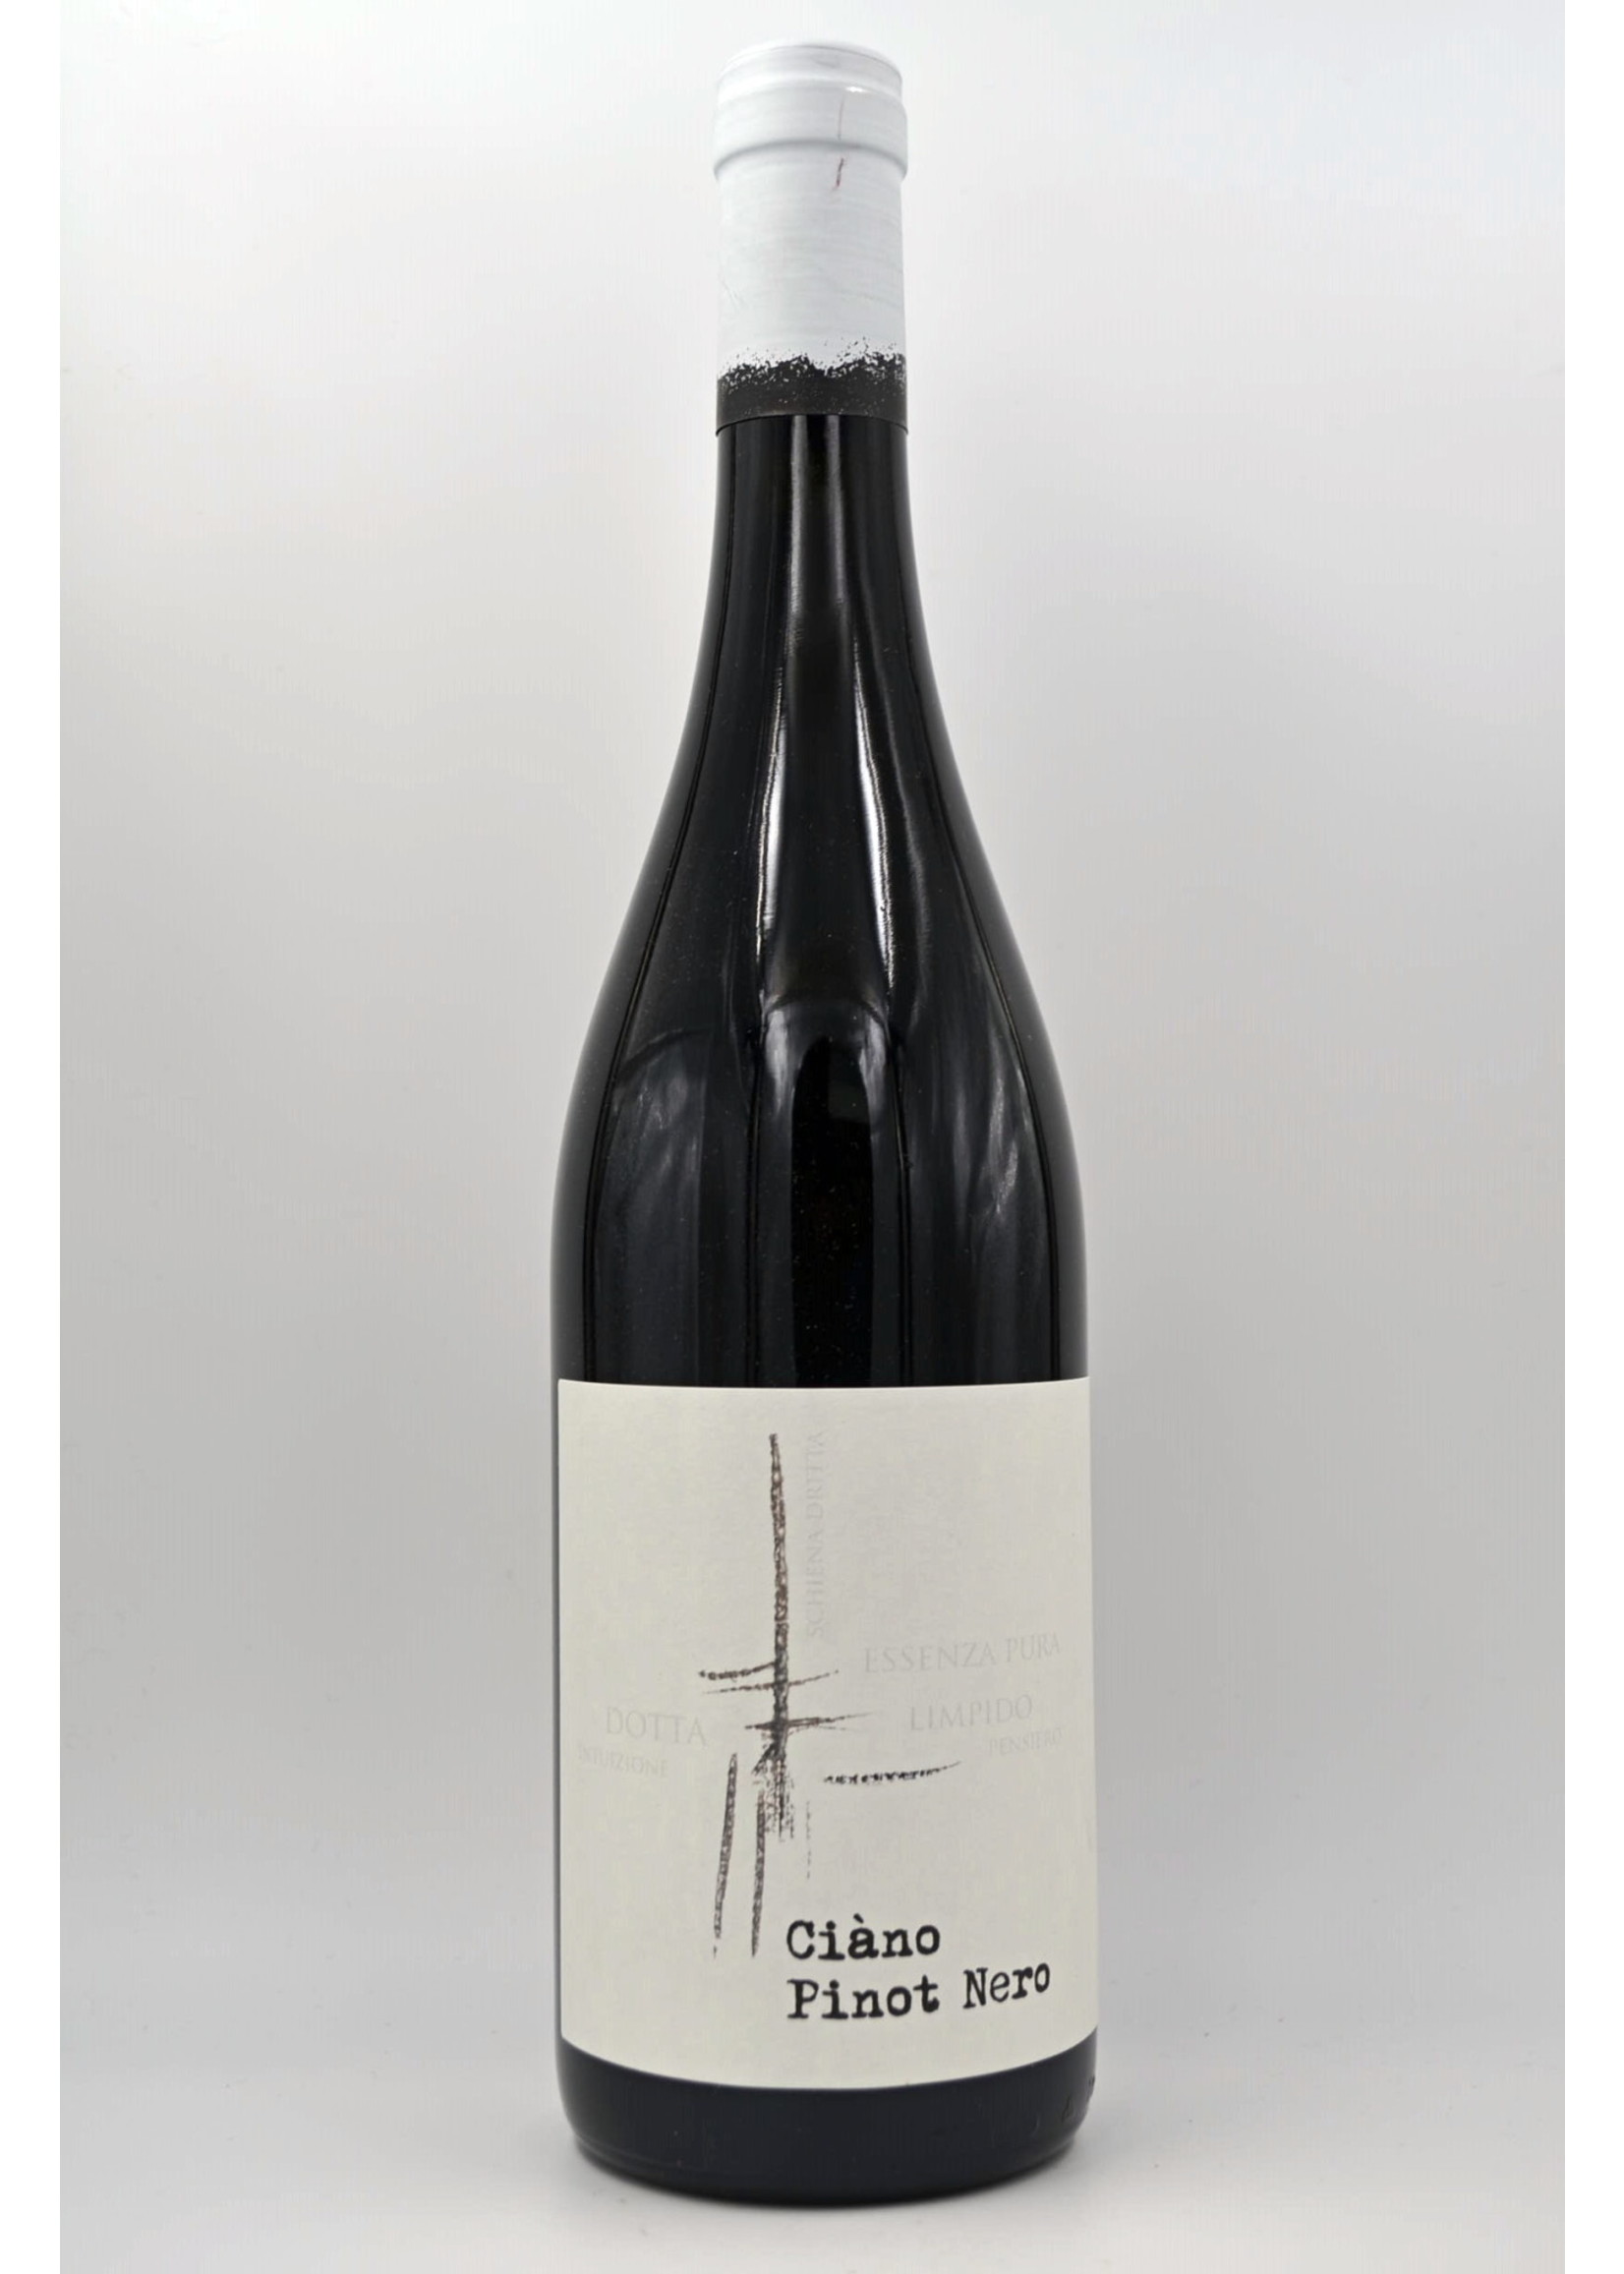 2015 Pinot Nero Ciano Masiero